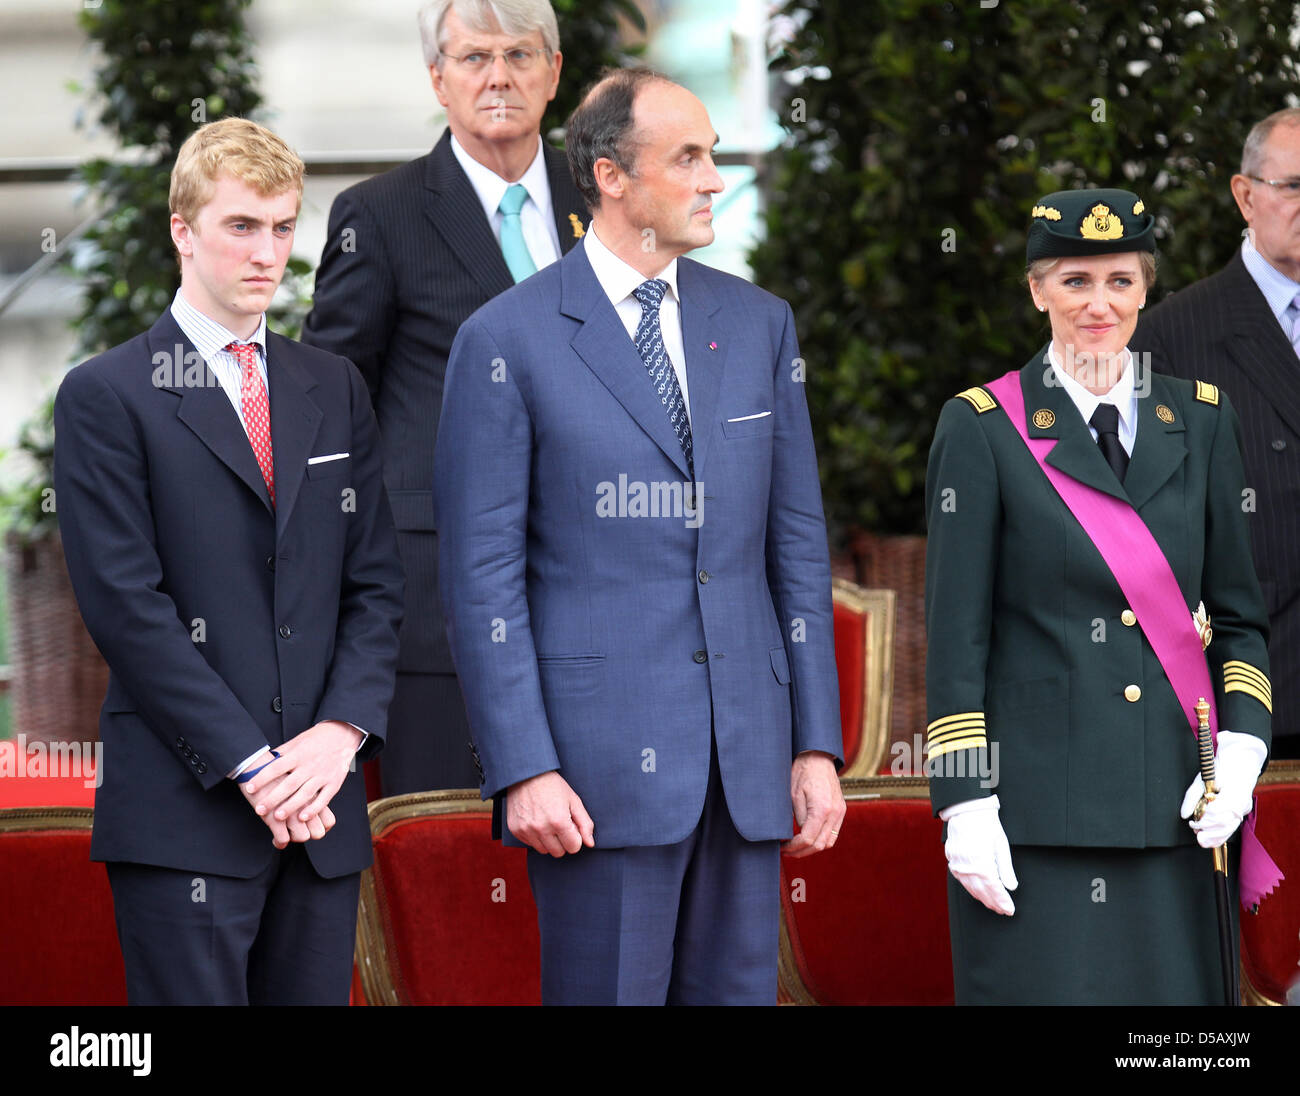 (R-L) La Princesse Astrid de Belgique, le Prince Lorenz de Belgique et le Prince Joachim de Belgique assister à la parade militaire à l'occasion de la fête nationale belge à Bruxelles, Belgique, 21 juillet 2010. Photo : Patrick van Katwijk Banque D'Images